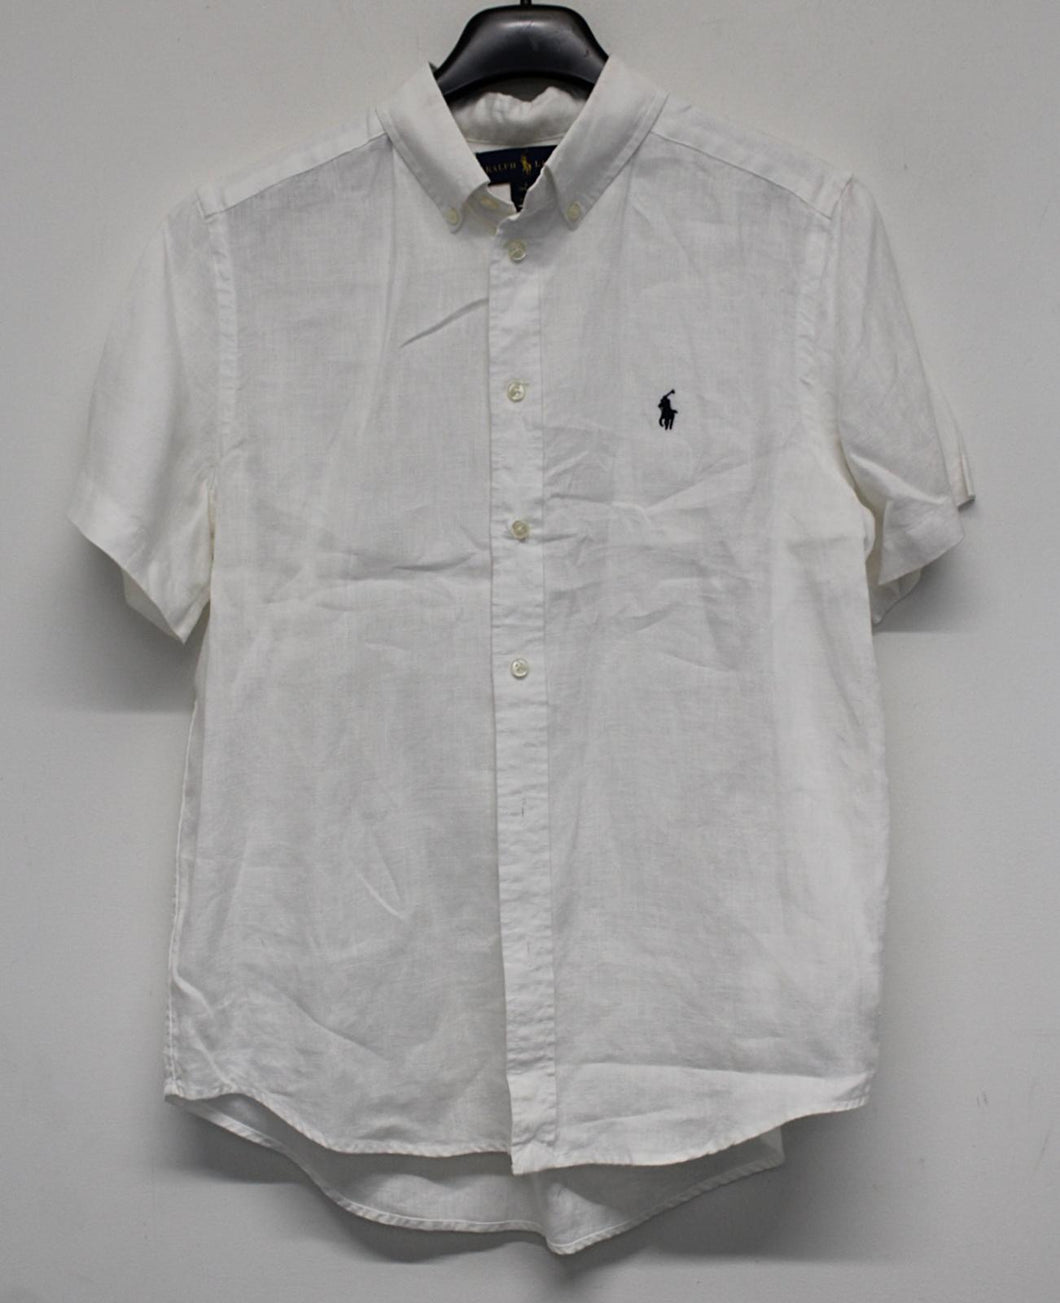 RALPH LAUREN Boys White Short Sleeve Button Down Linen Shirt 14/16Yrs/L